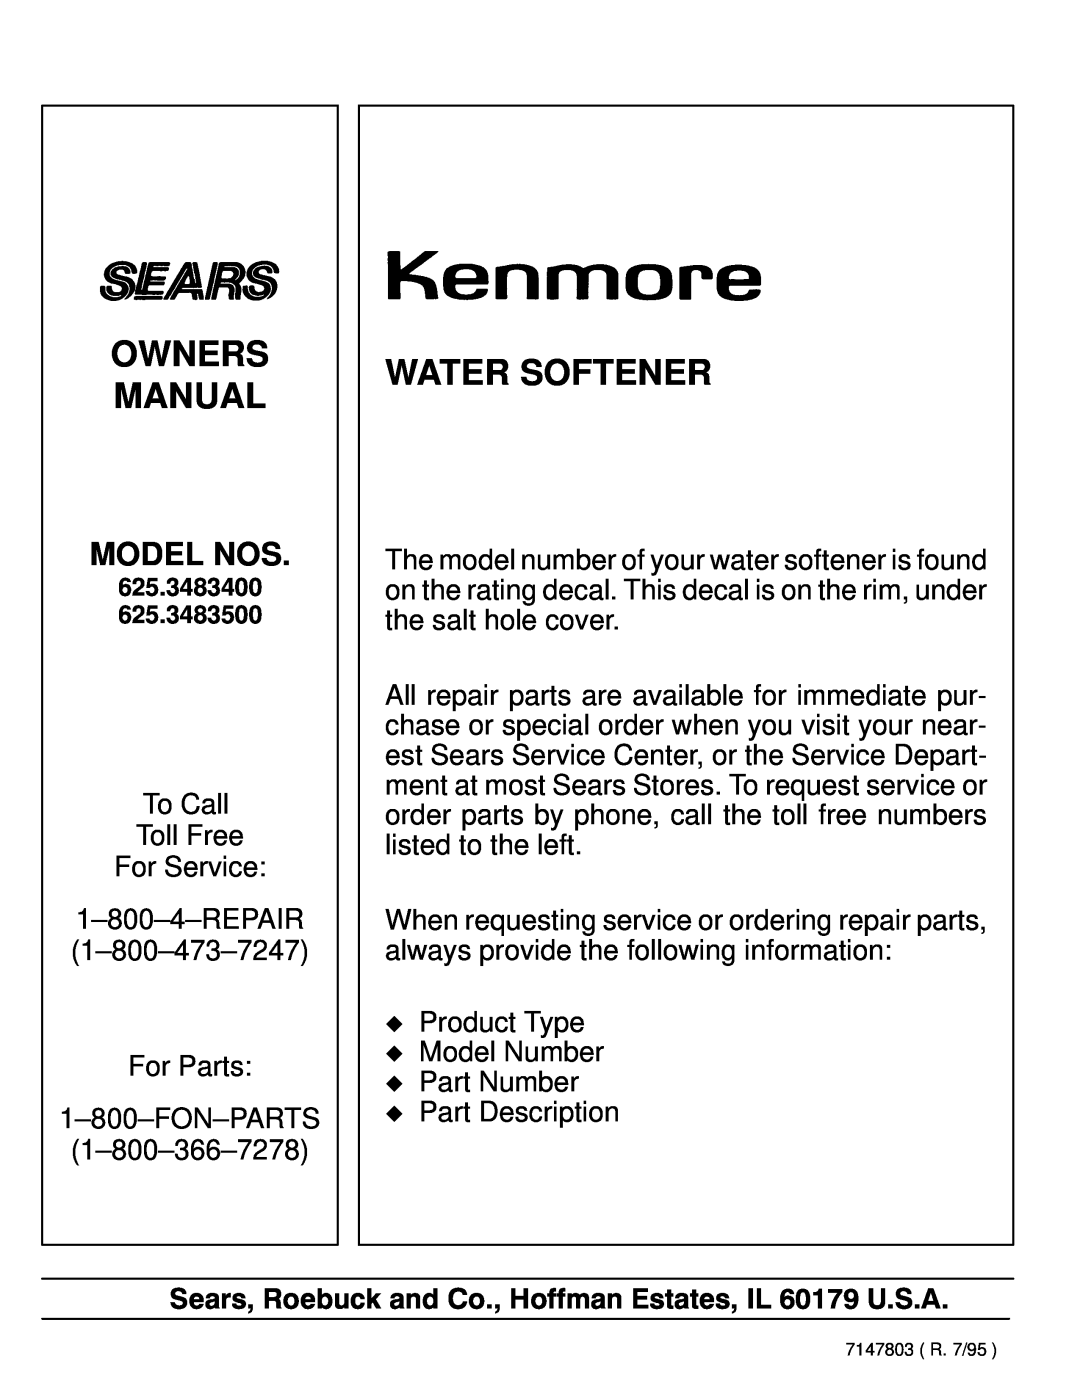 Kenmore 625.3483400, 625.3483500 owner manual Owners Manual, Water Softener, Model Nos 